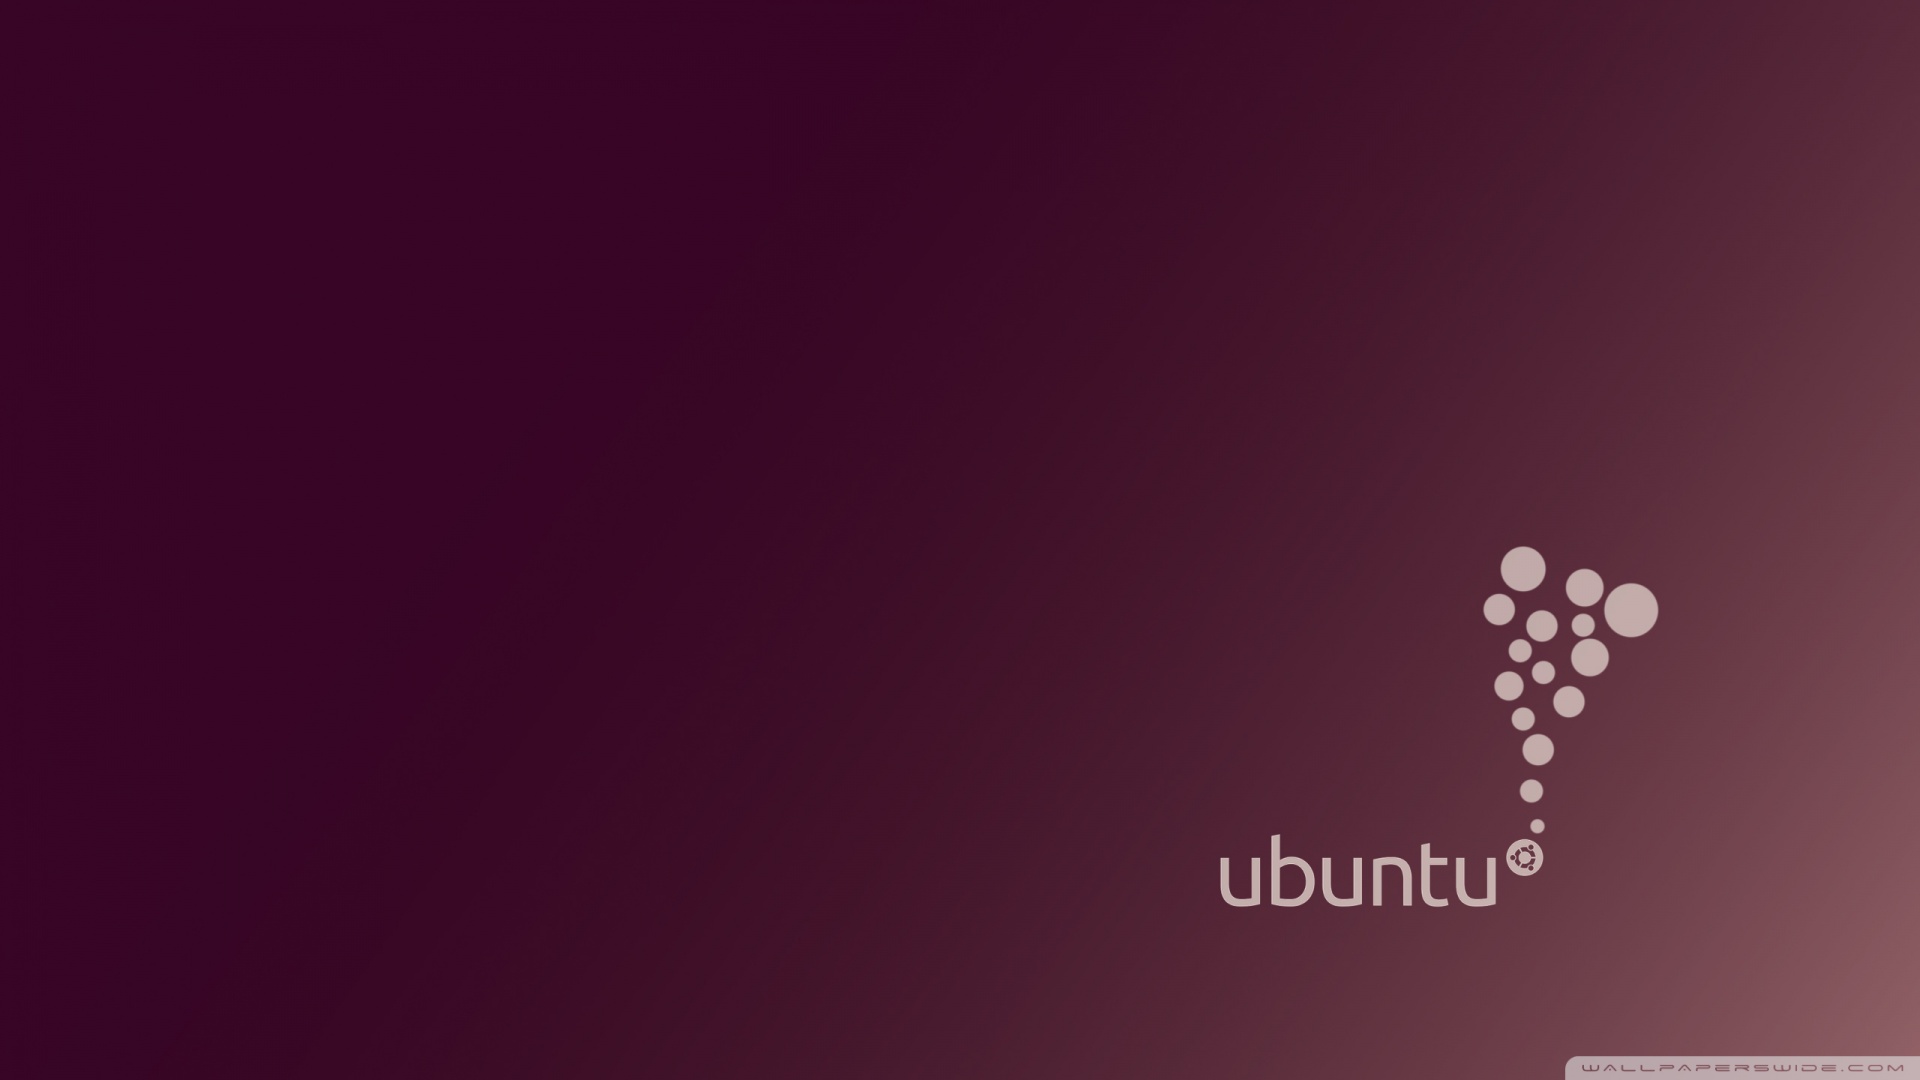 download ubuntu 14.04 vmware image